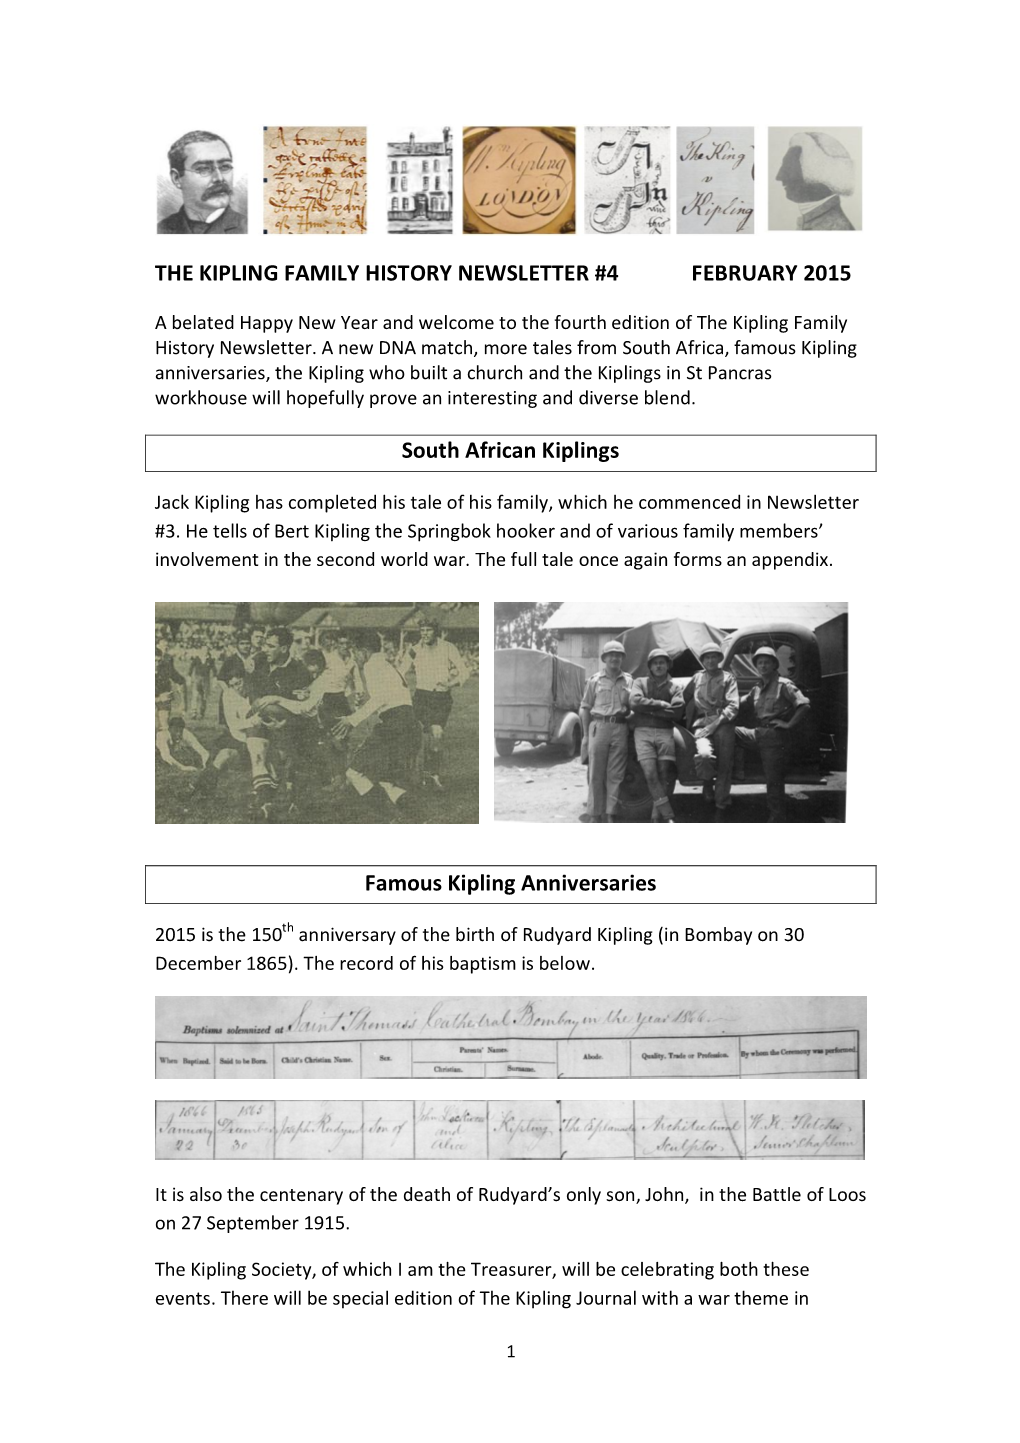 The Kipling Family History Newsletter #4 February 2015